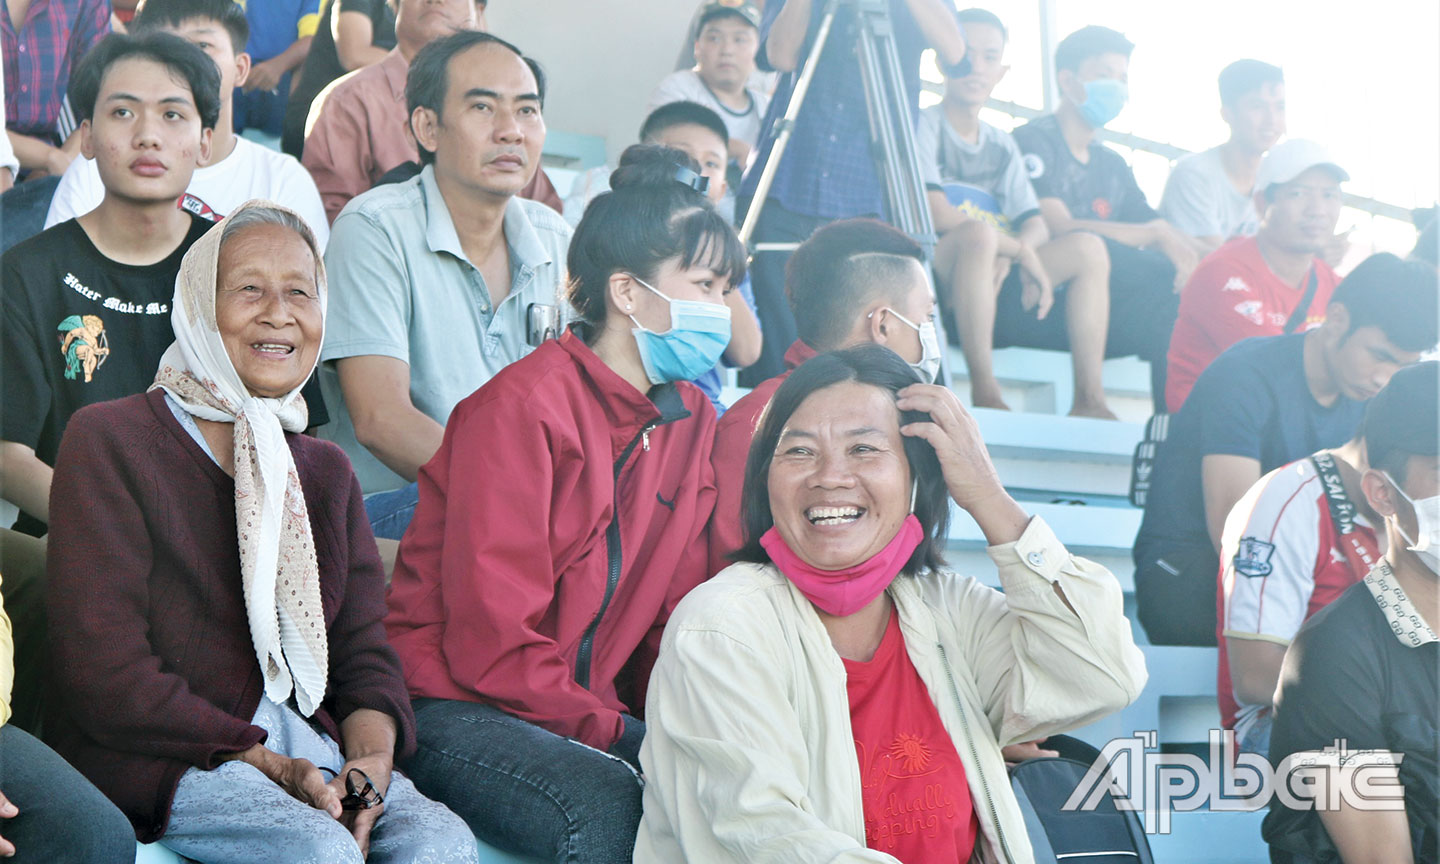  Bà Lê Thị Hồng Vân (bìa trái) đến sân cổ vũ Đội Bóng đá Tiền Giang và cháu Nguyễn Hữu Hồng Thương thi đấu.